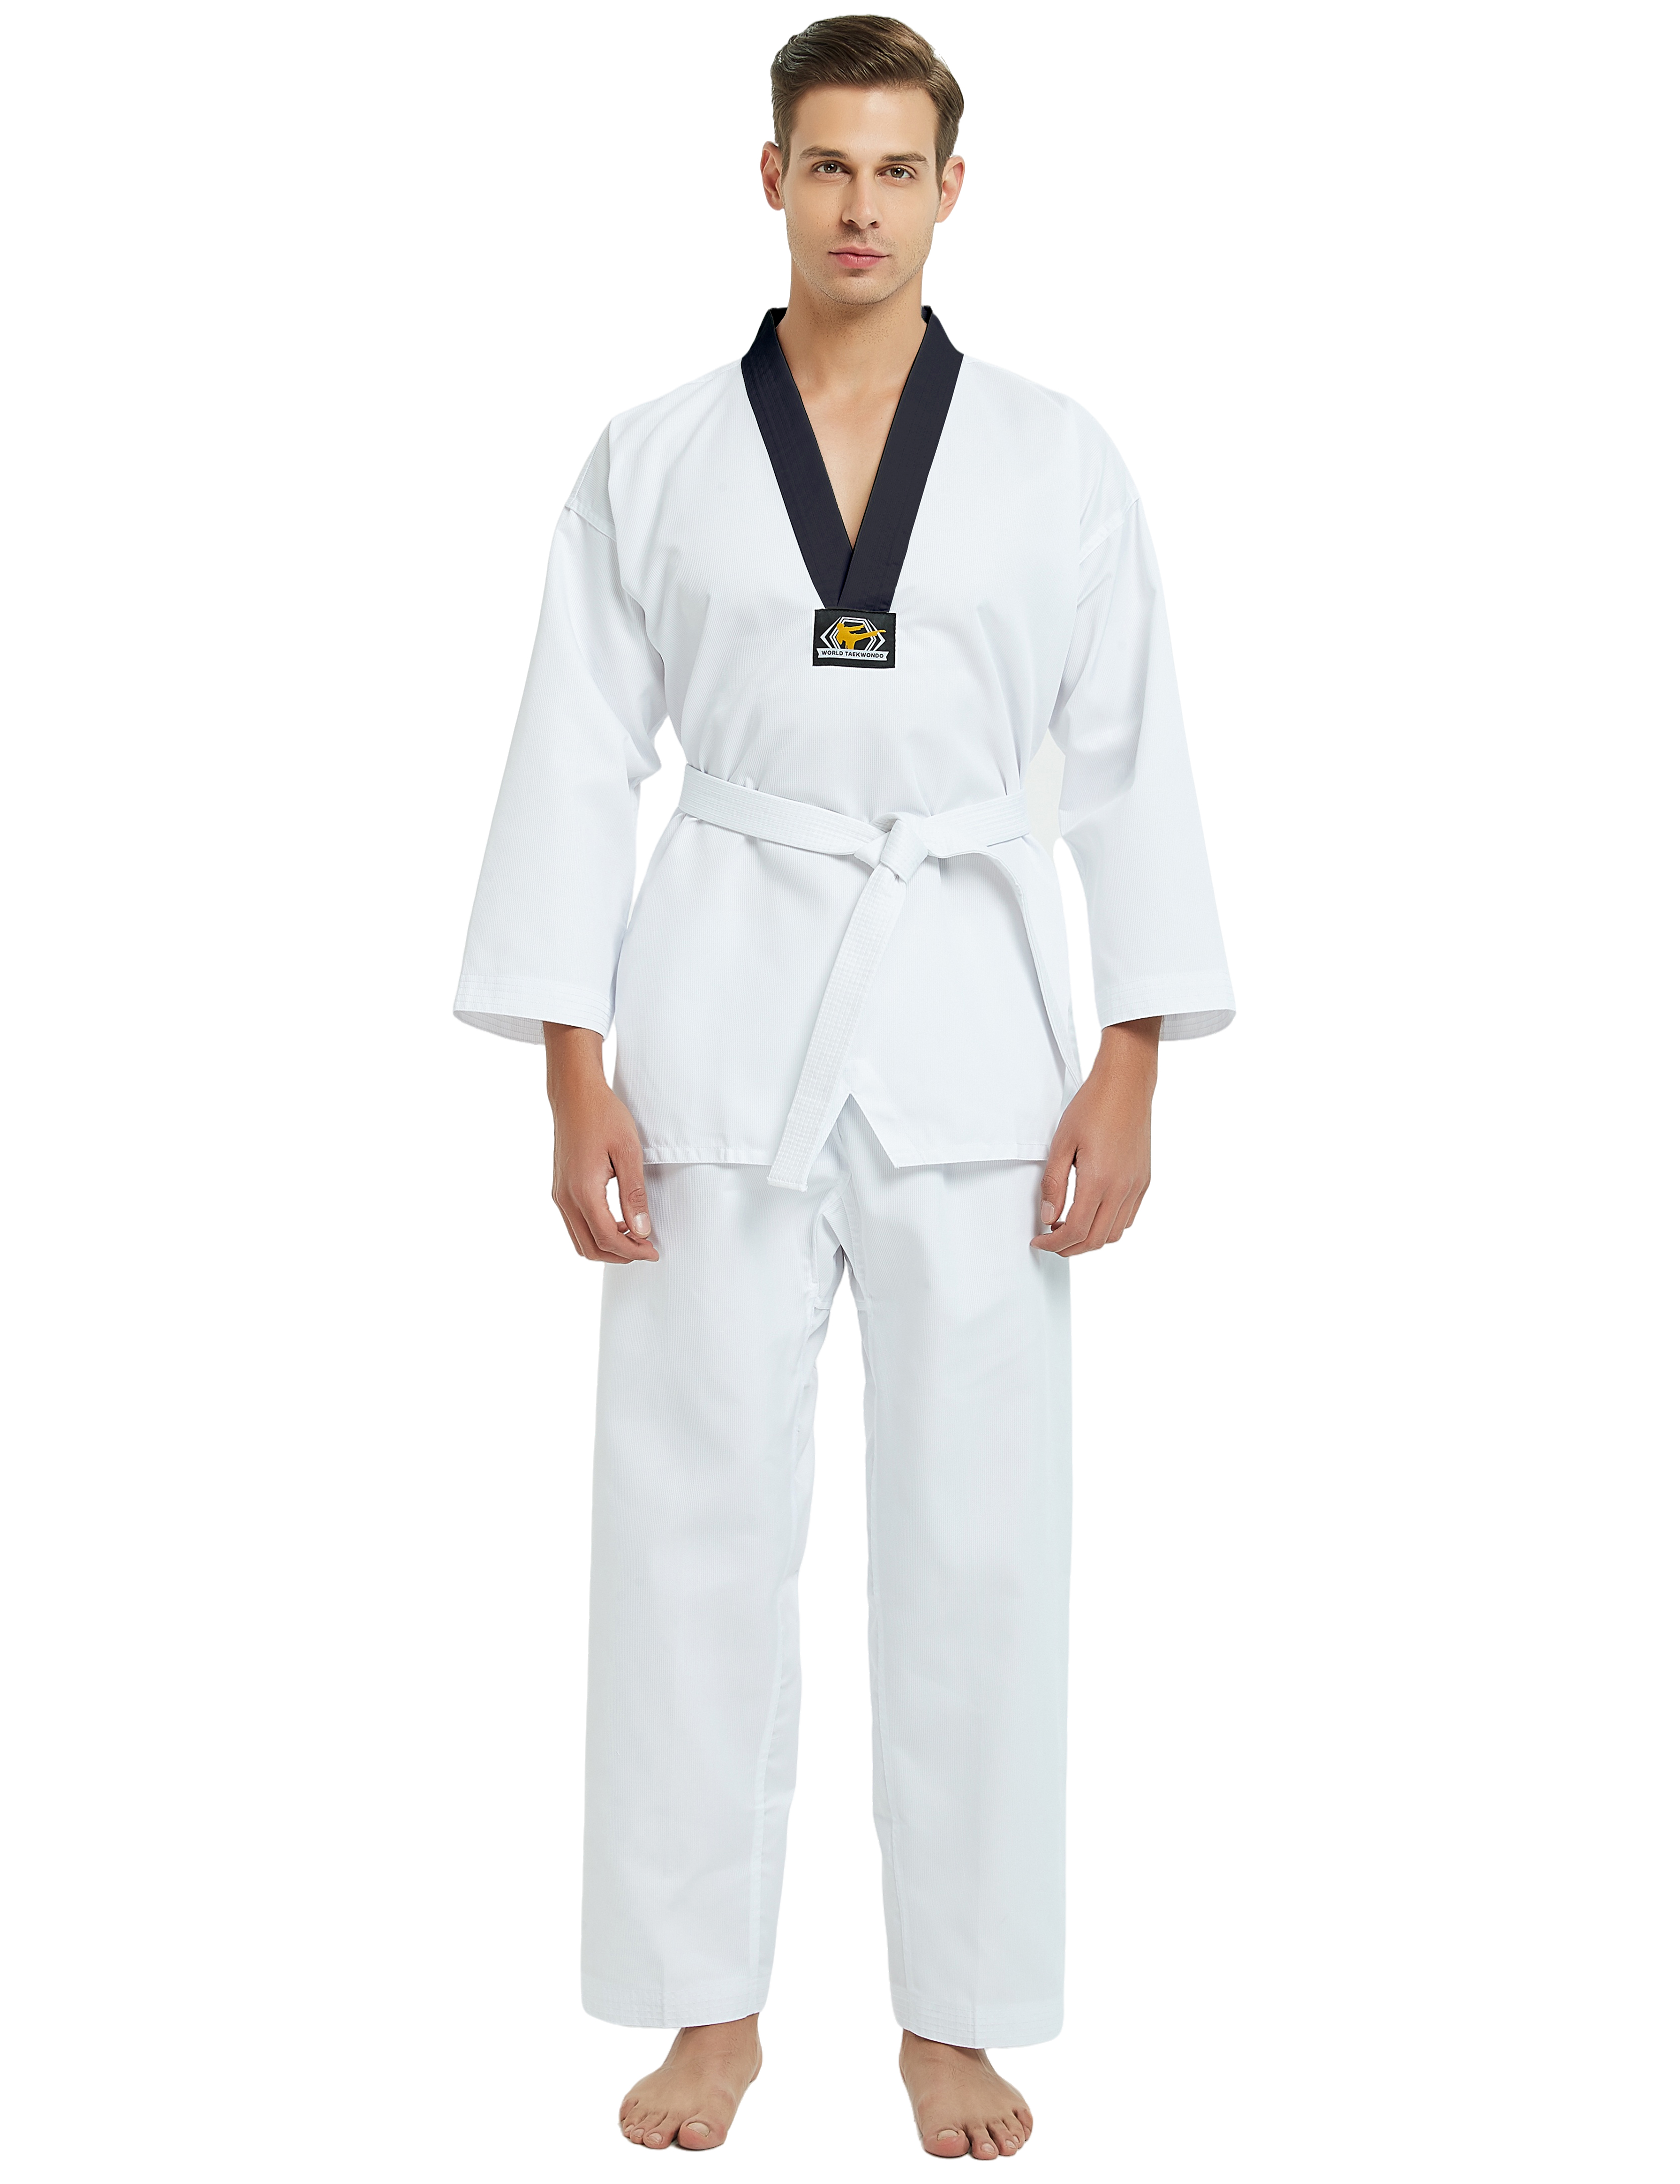 Toptie Karate TaeKwonDo Belt, Martial Arts Double Wrap Solid Rank